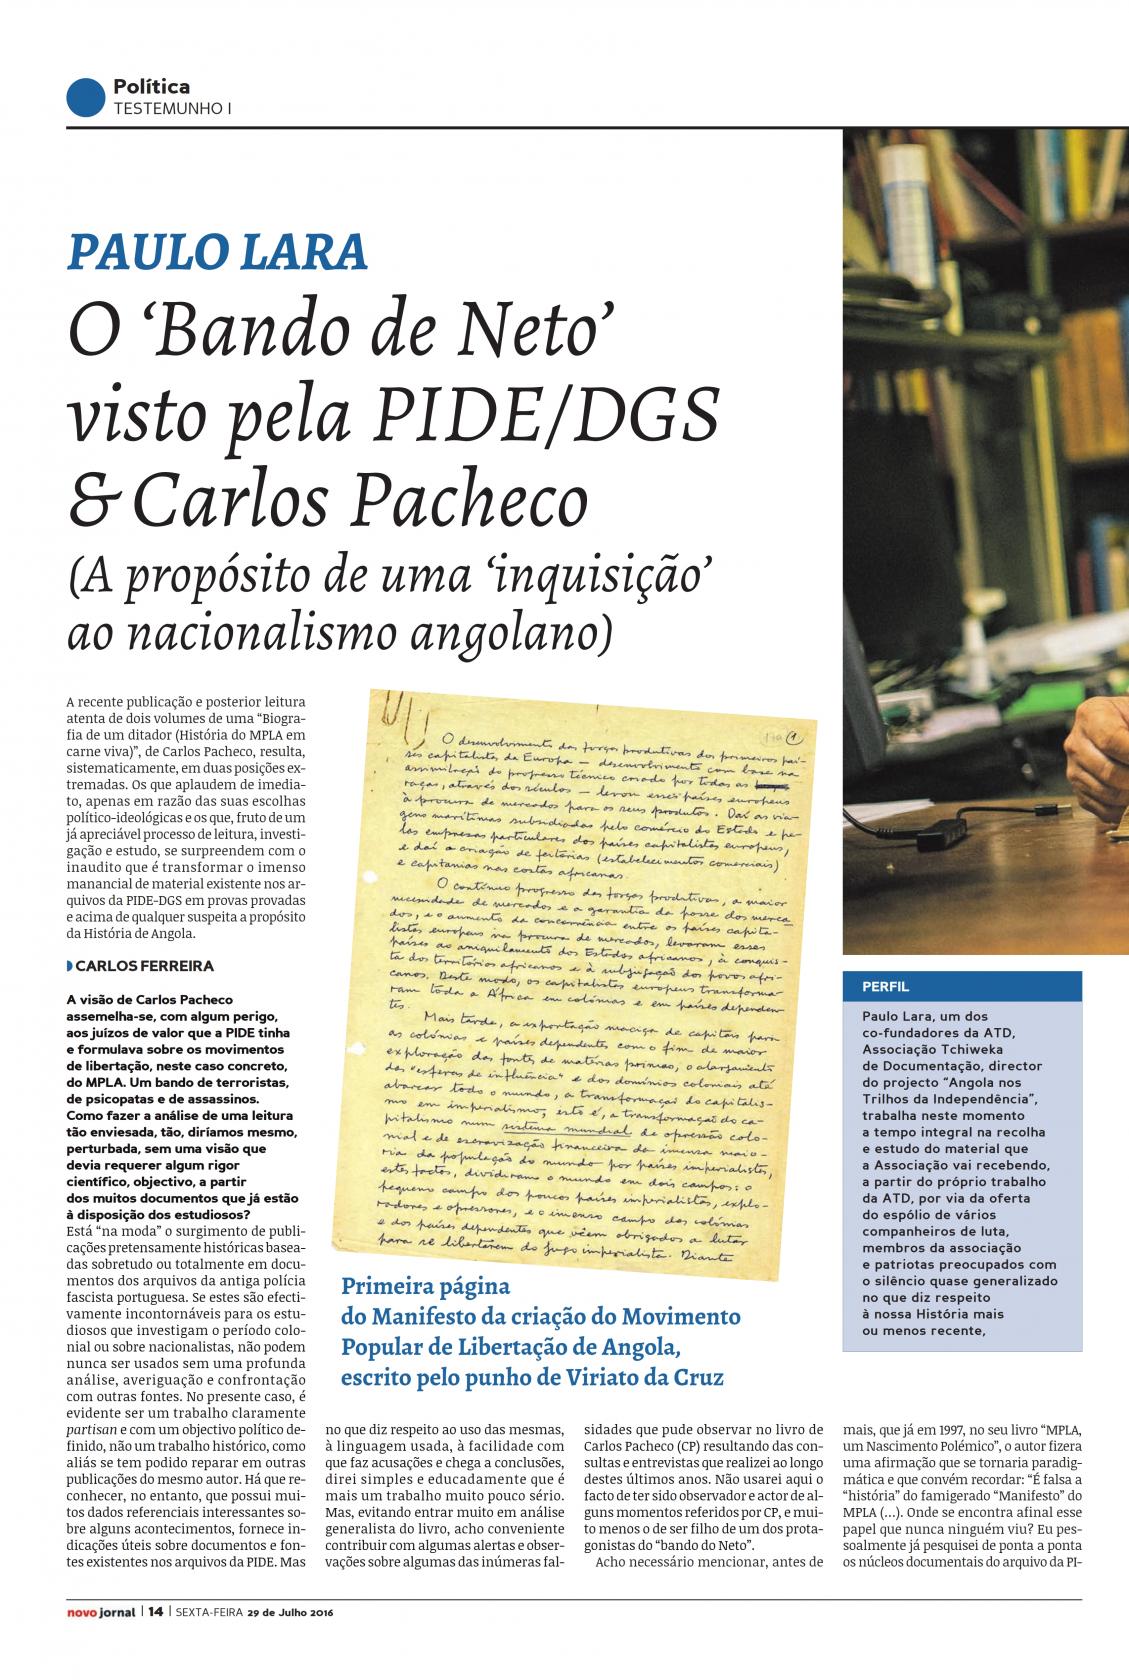 O 'Bando de Neto' visto pela PIDE/DGS & Carlos Pacheco